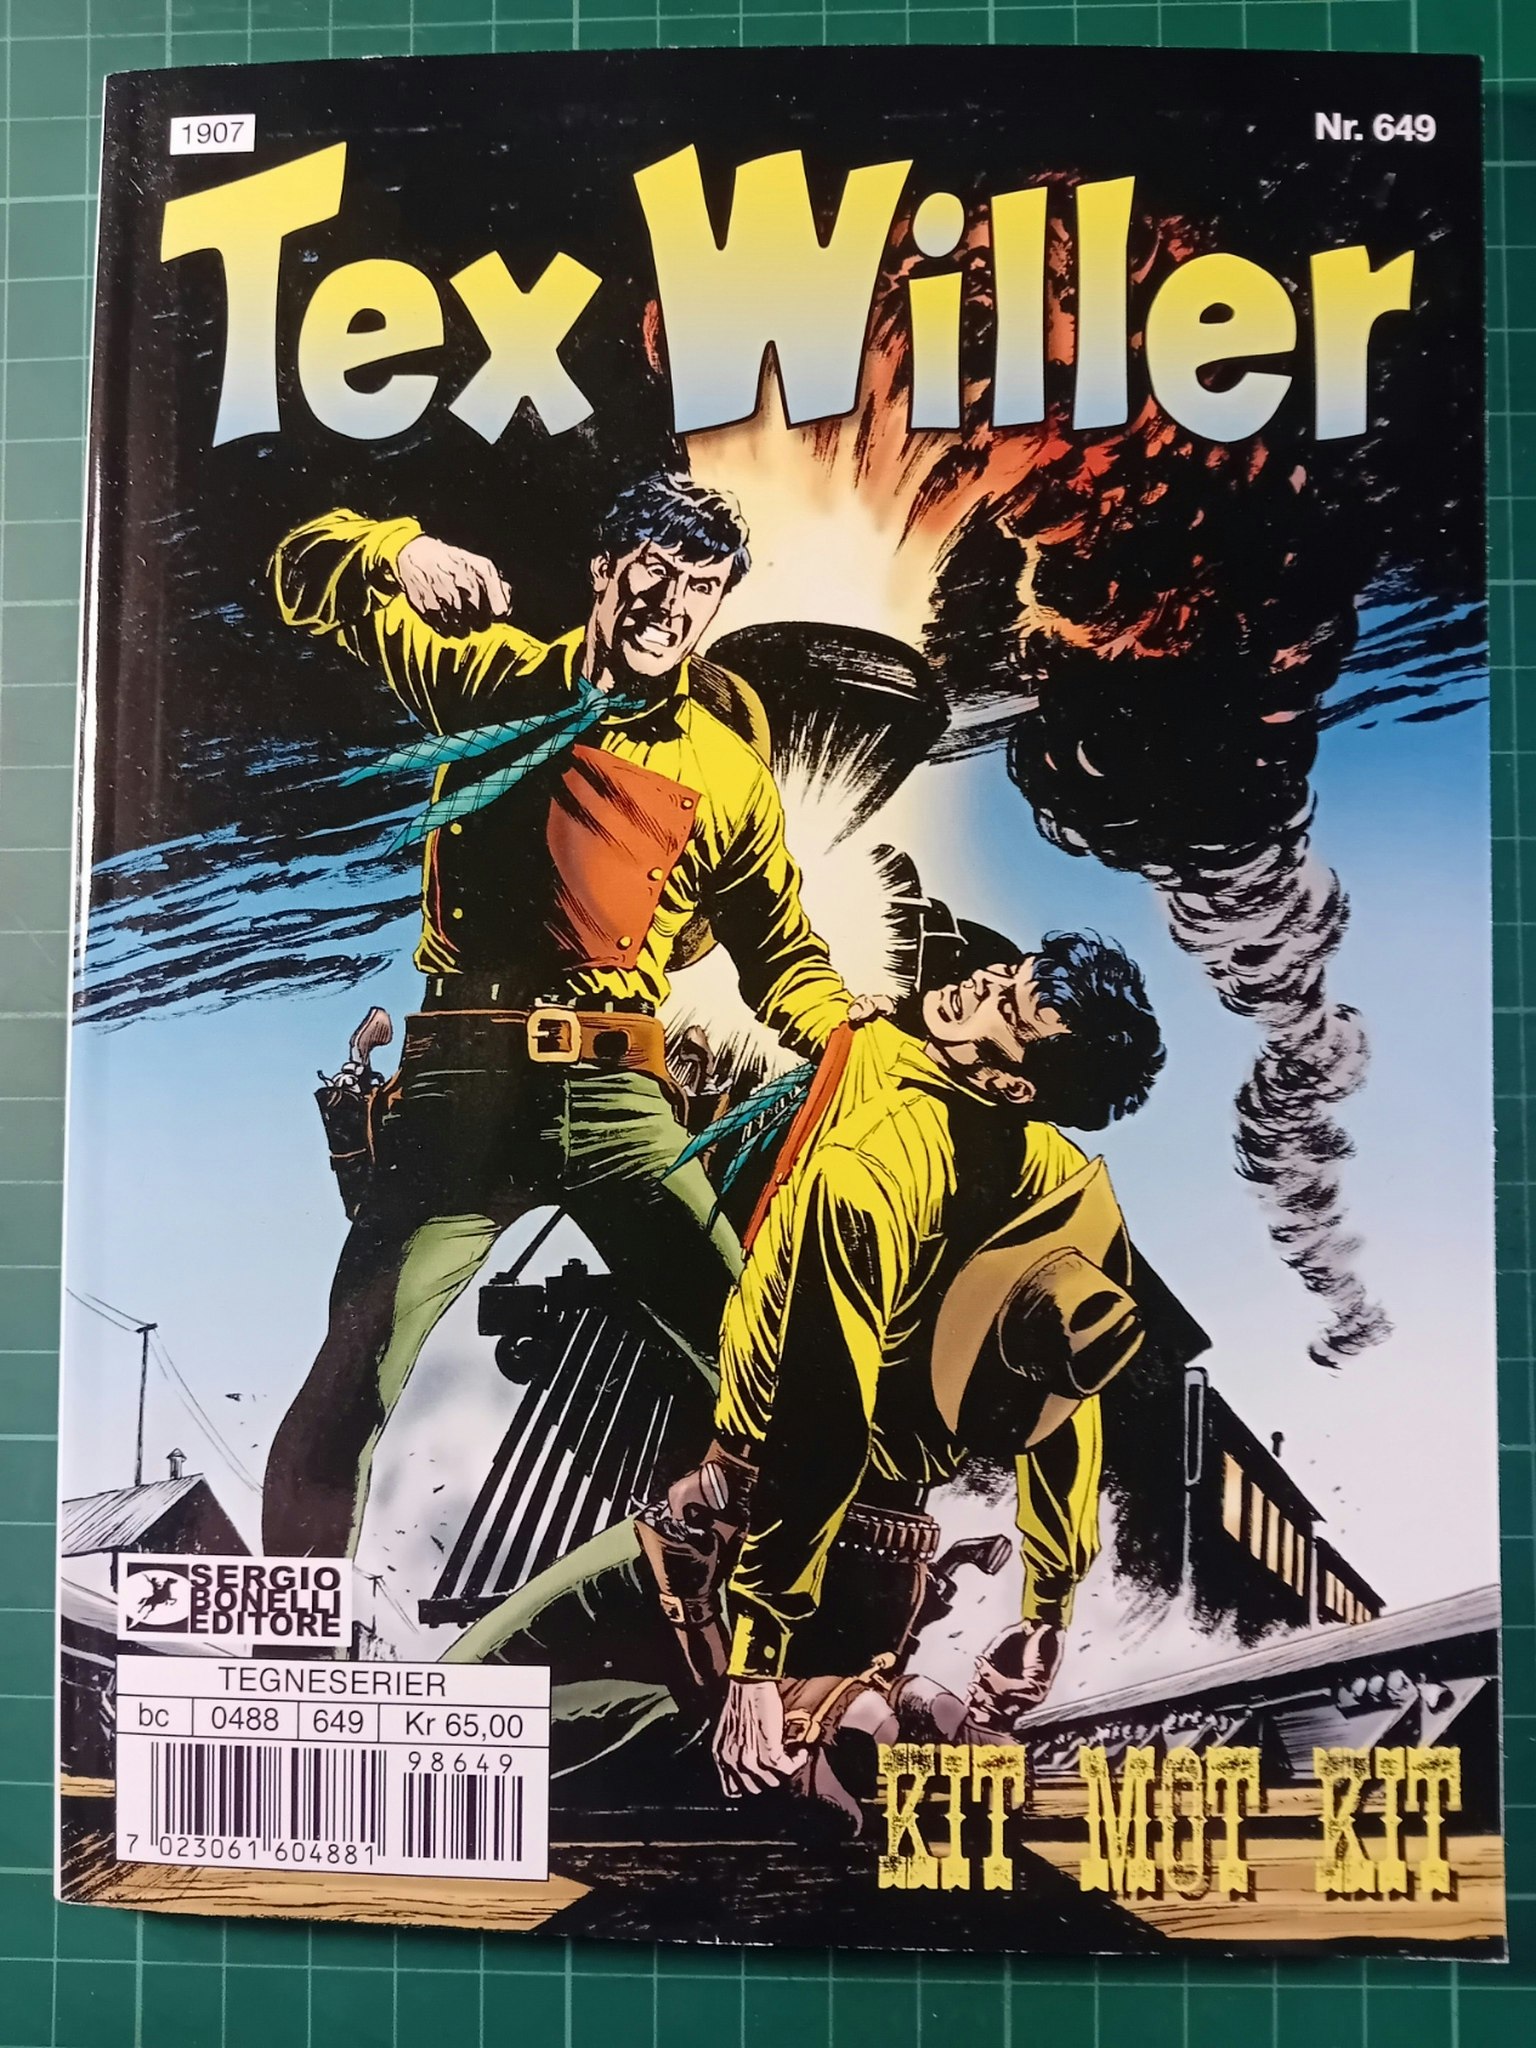 Tex Willer #644